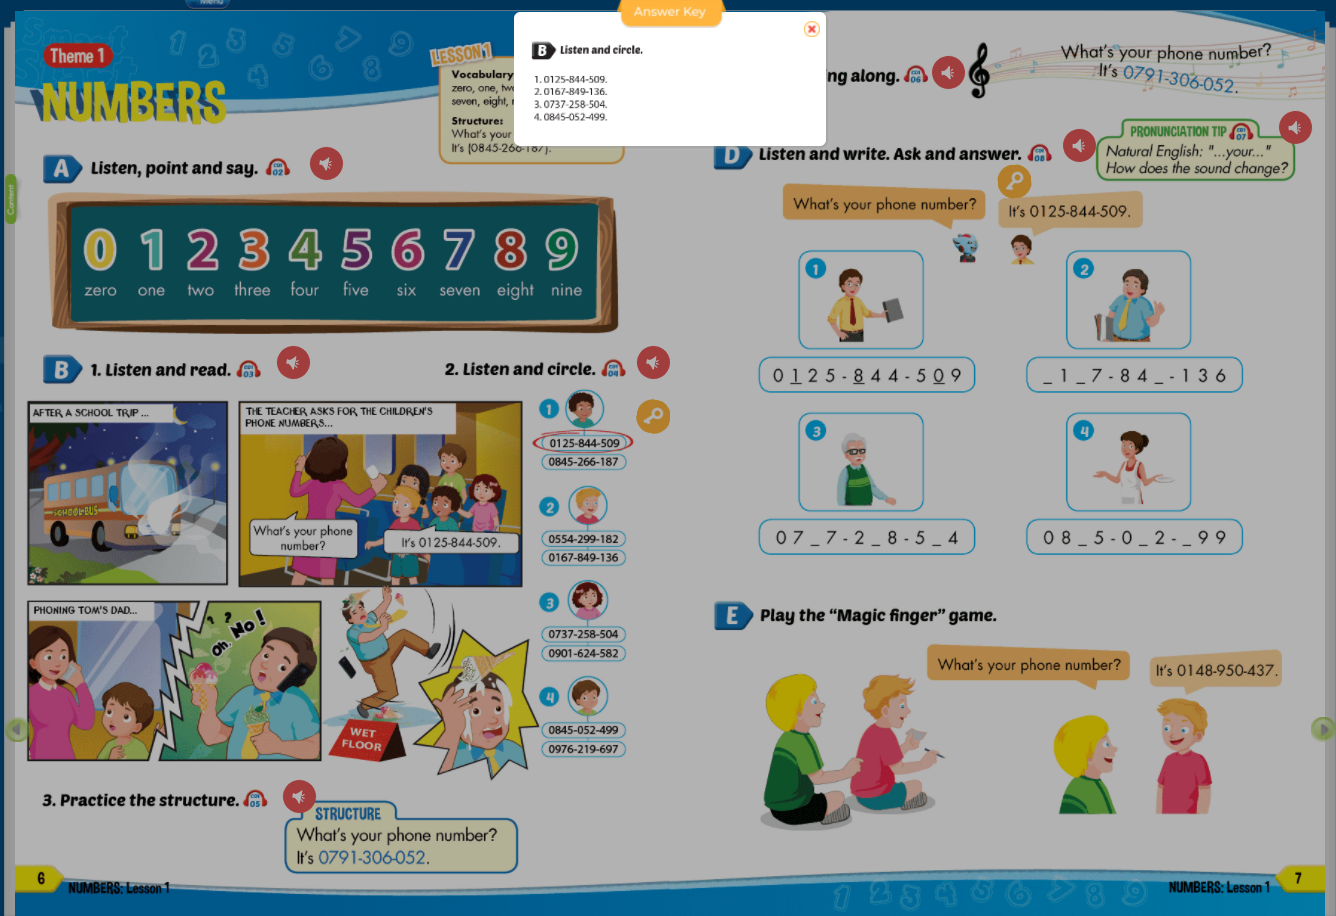 [E-BOOK] i-Learn Smart Start Grade 4 Sách mềm sách học sinh